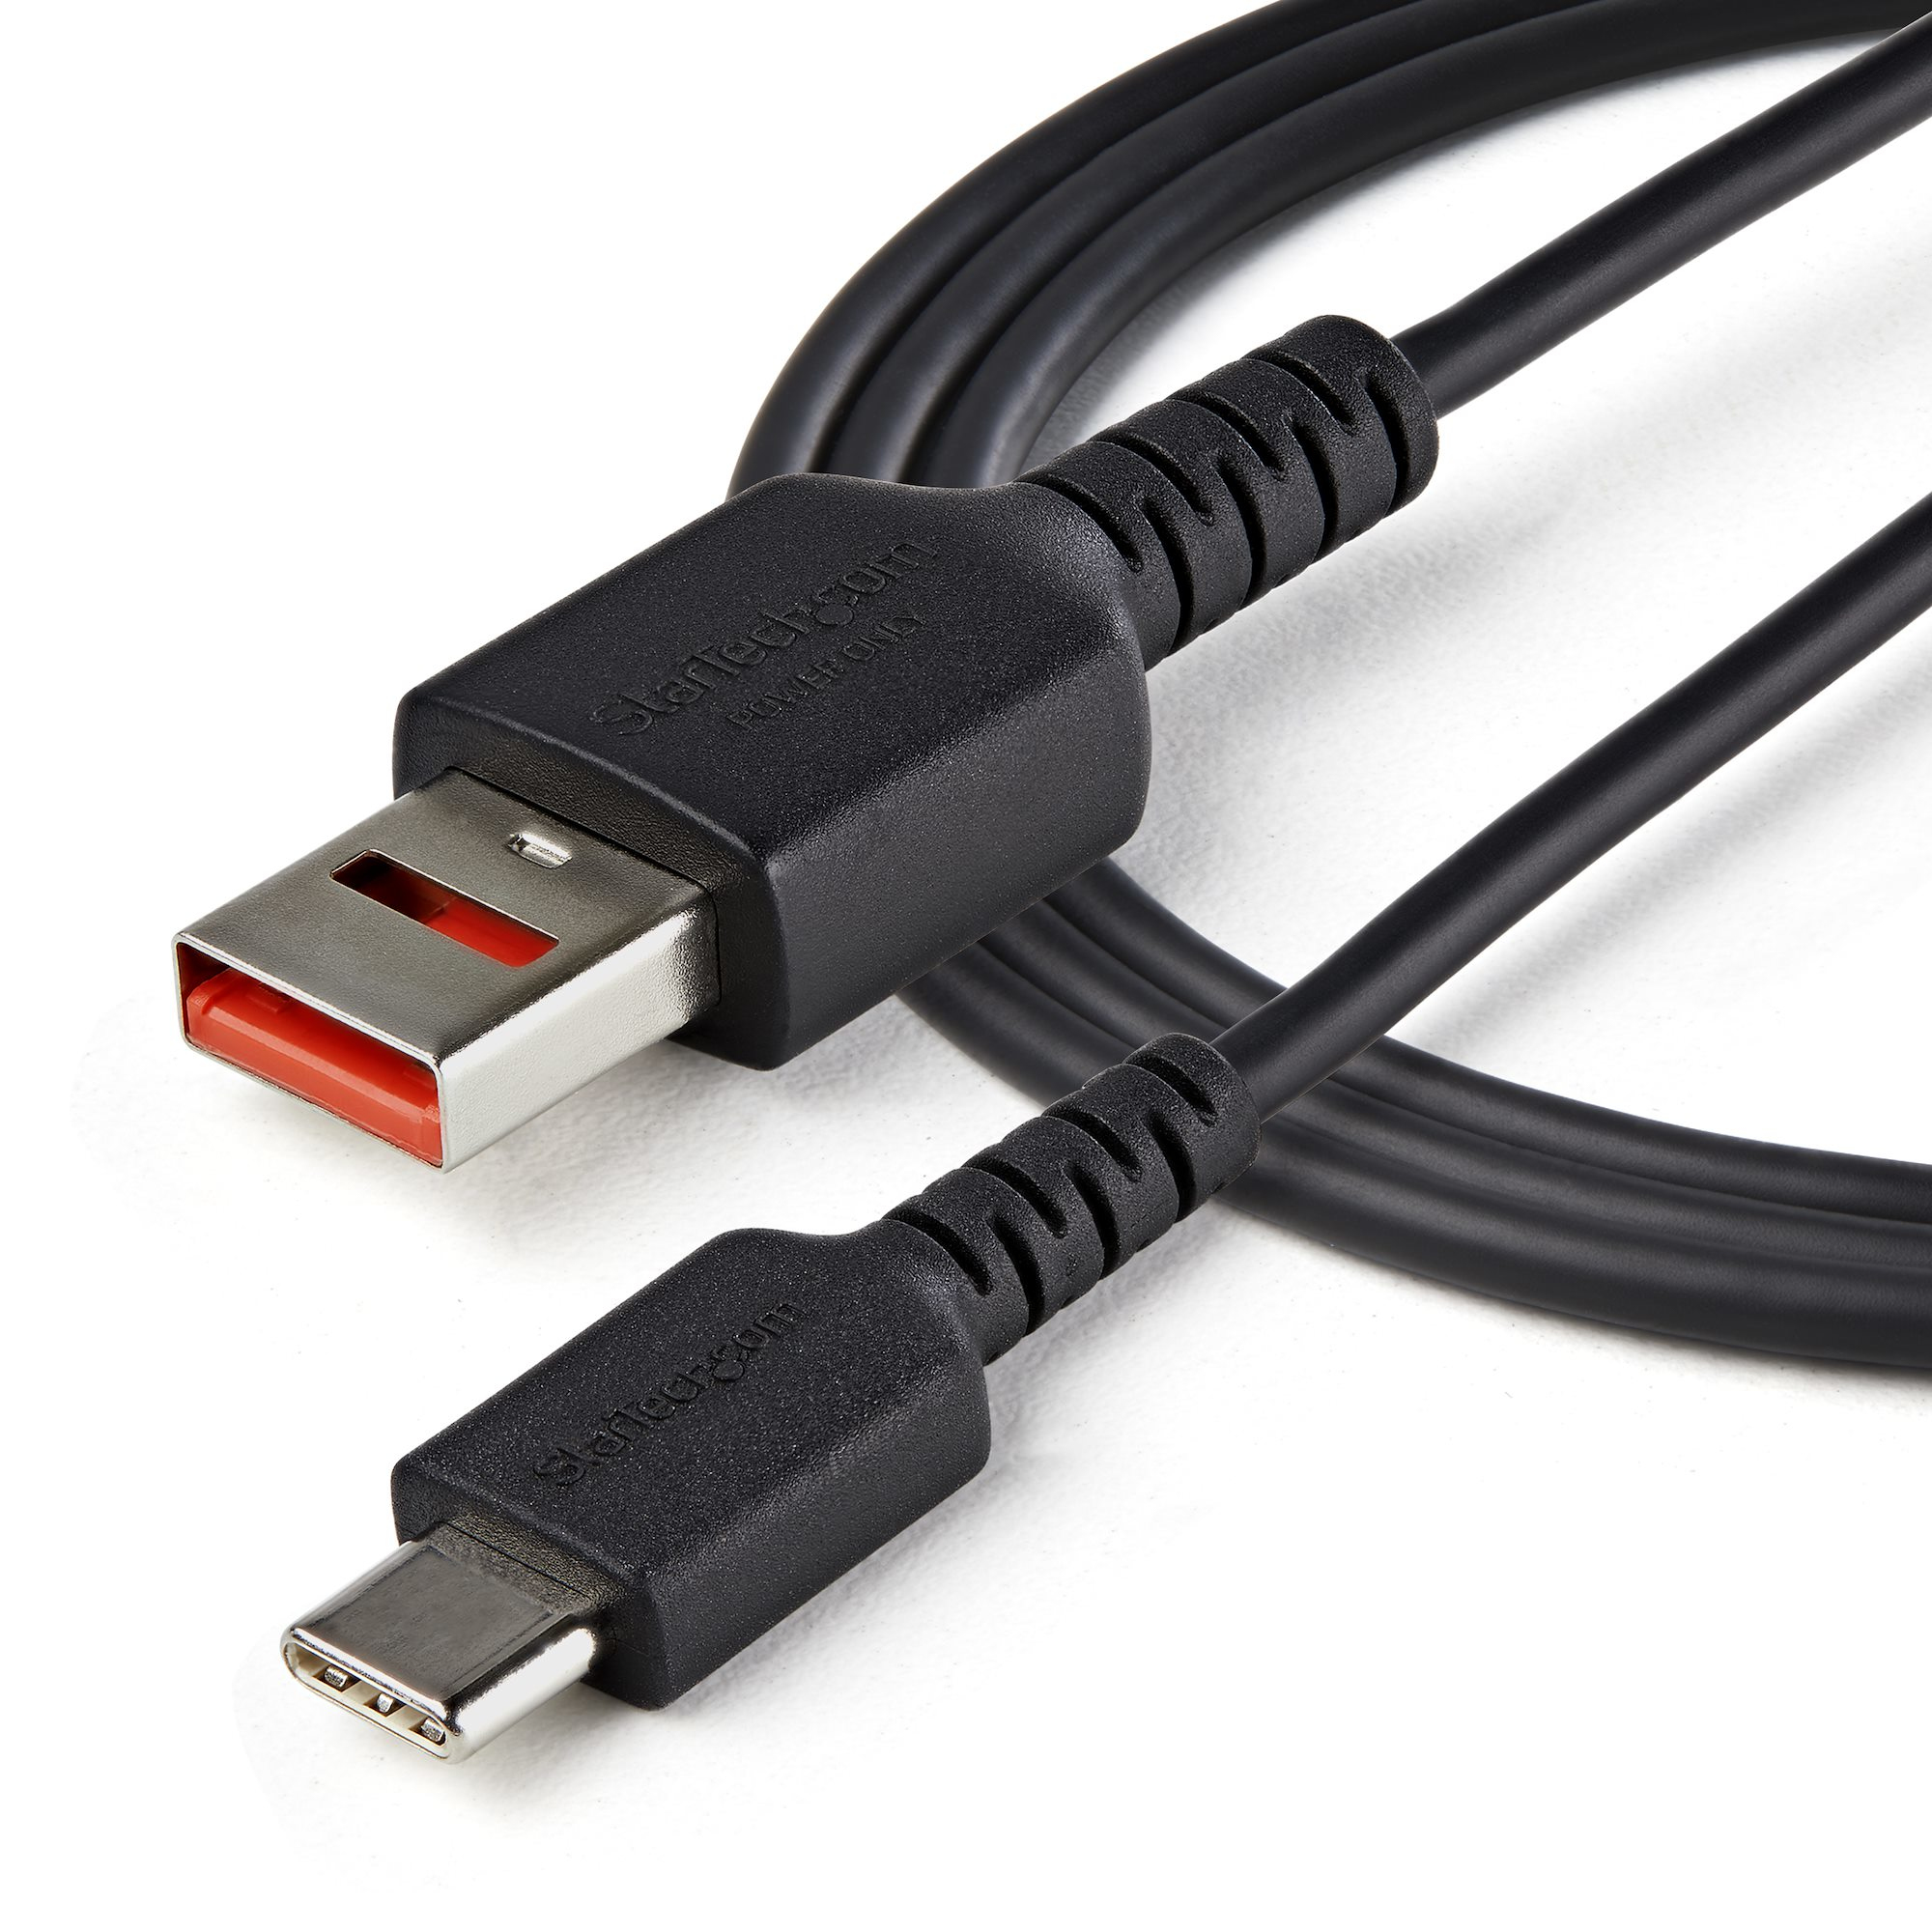 Ontstaan Kruiden compileren StarTech.com 1m Data Blocker Kabel USB-A naar USB-C Secure Charging Kabel  No-Data Power-Only Oplaadkabel voor Telefoon/Tablet USB Protector Data  Blocker Adapter Kabel (USBSCHAC1M) kopen » Centralpoint